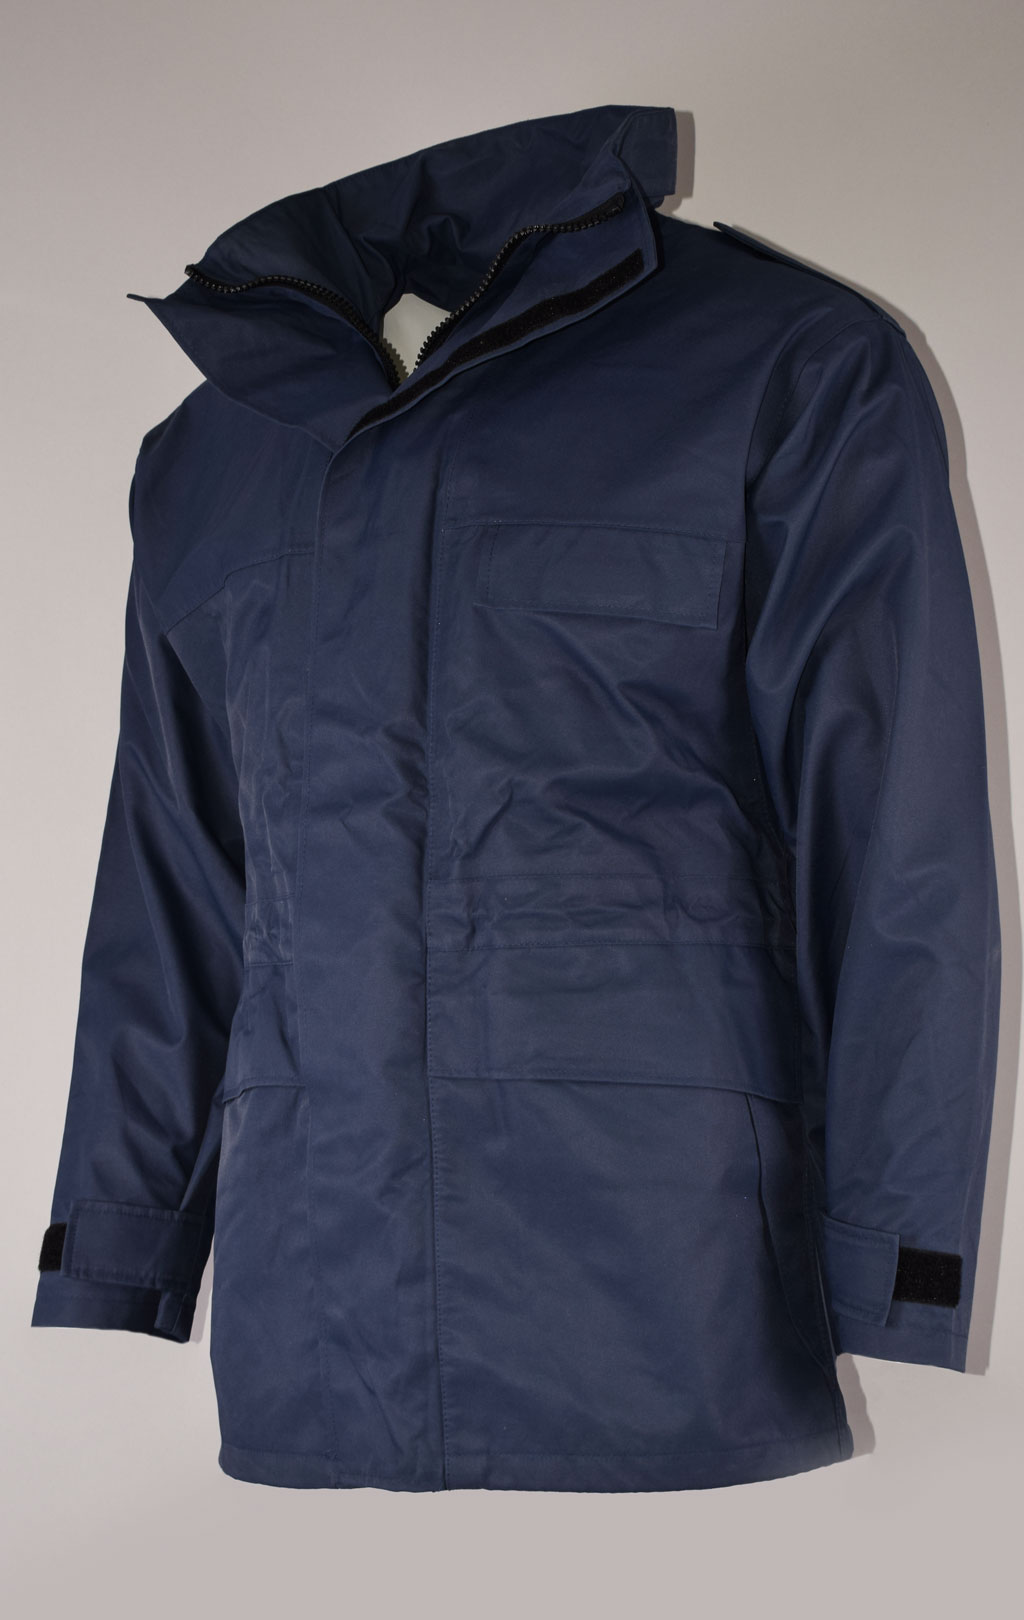 Куртка непромокаемая Gore-Tex RAF Gore-Tex с подстёжкой navy Англия